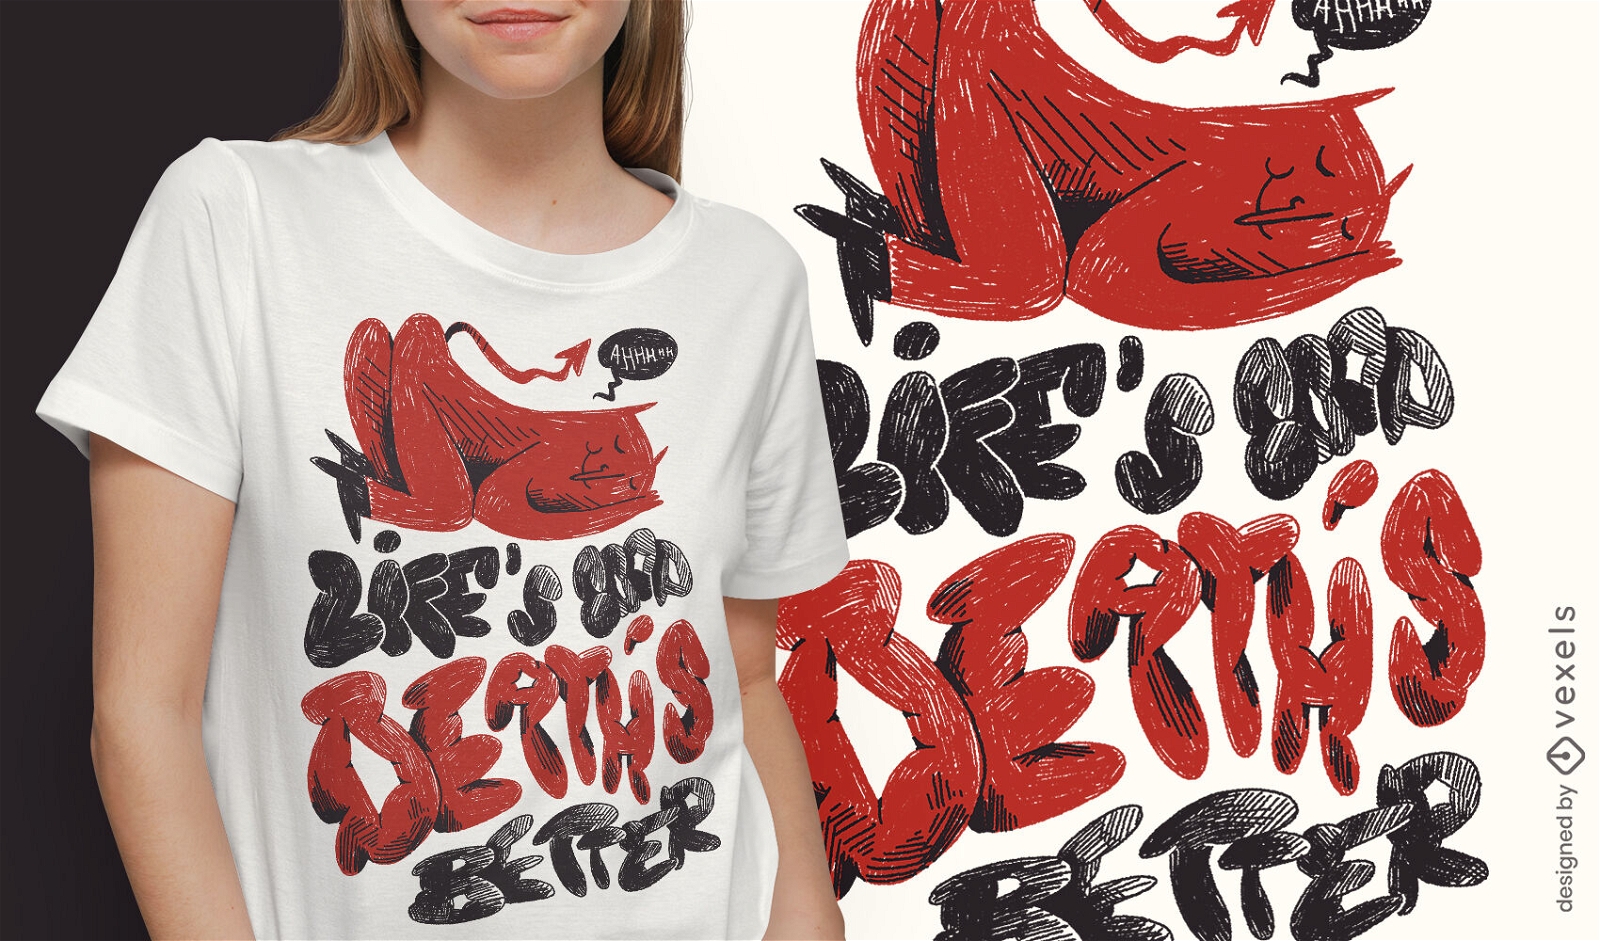 Das bessere Jenseits-T-Shirt-Design des Todes